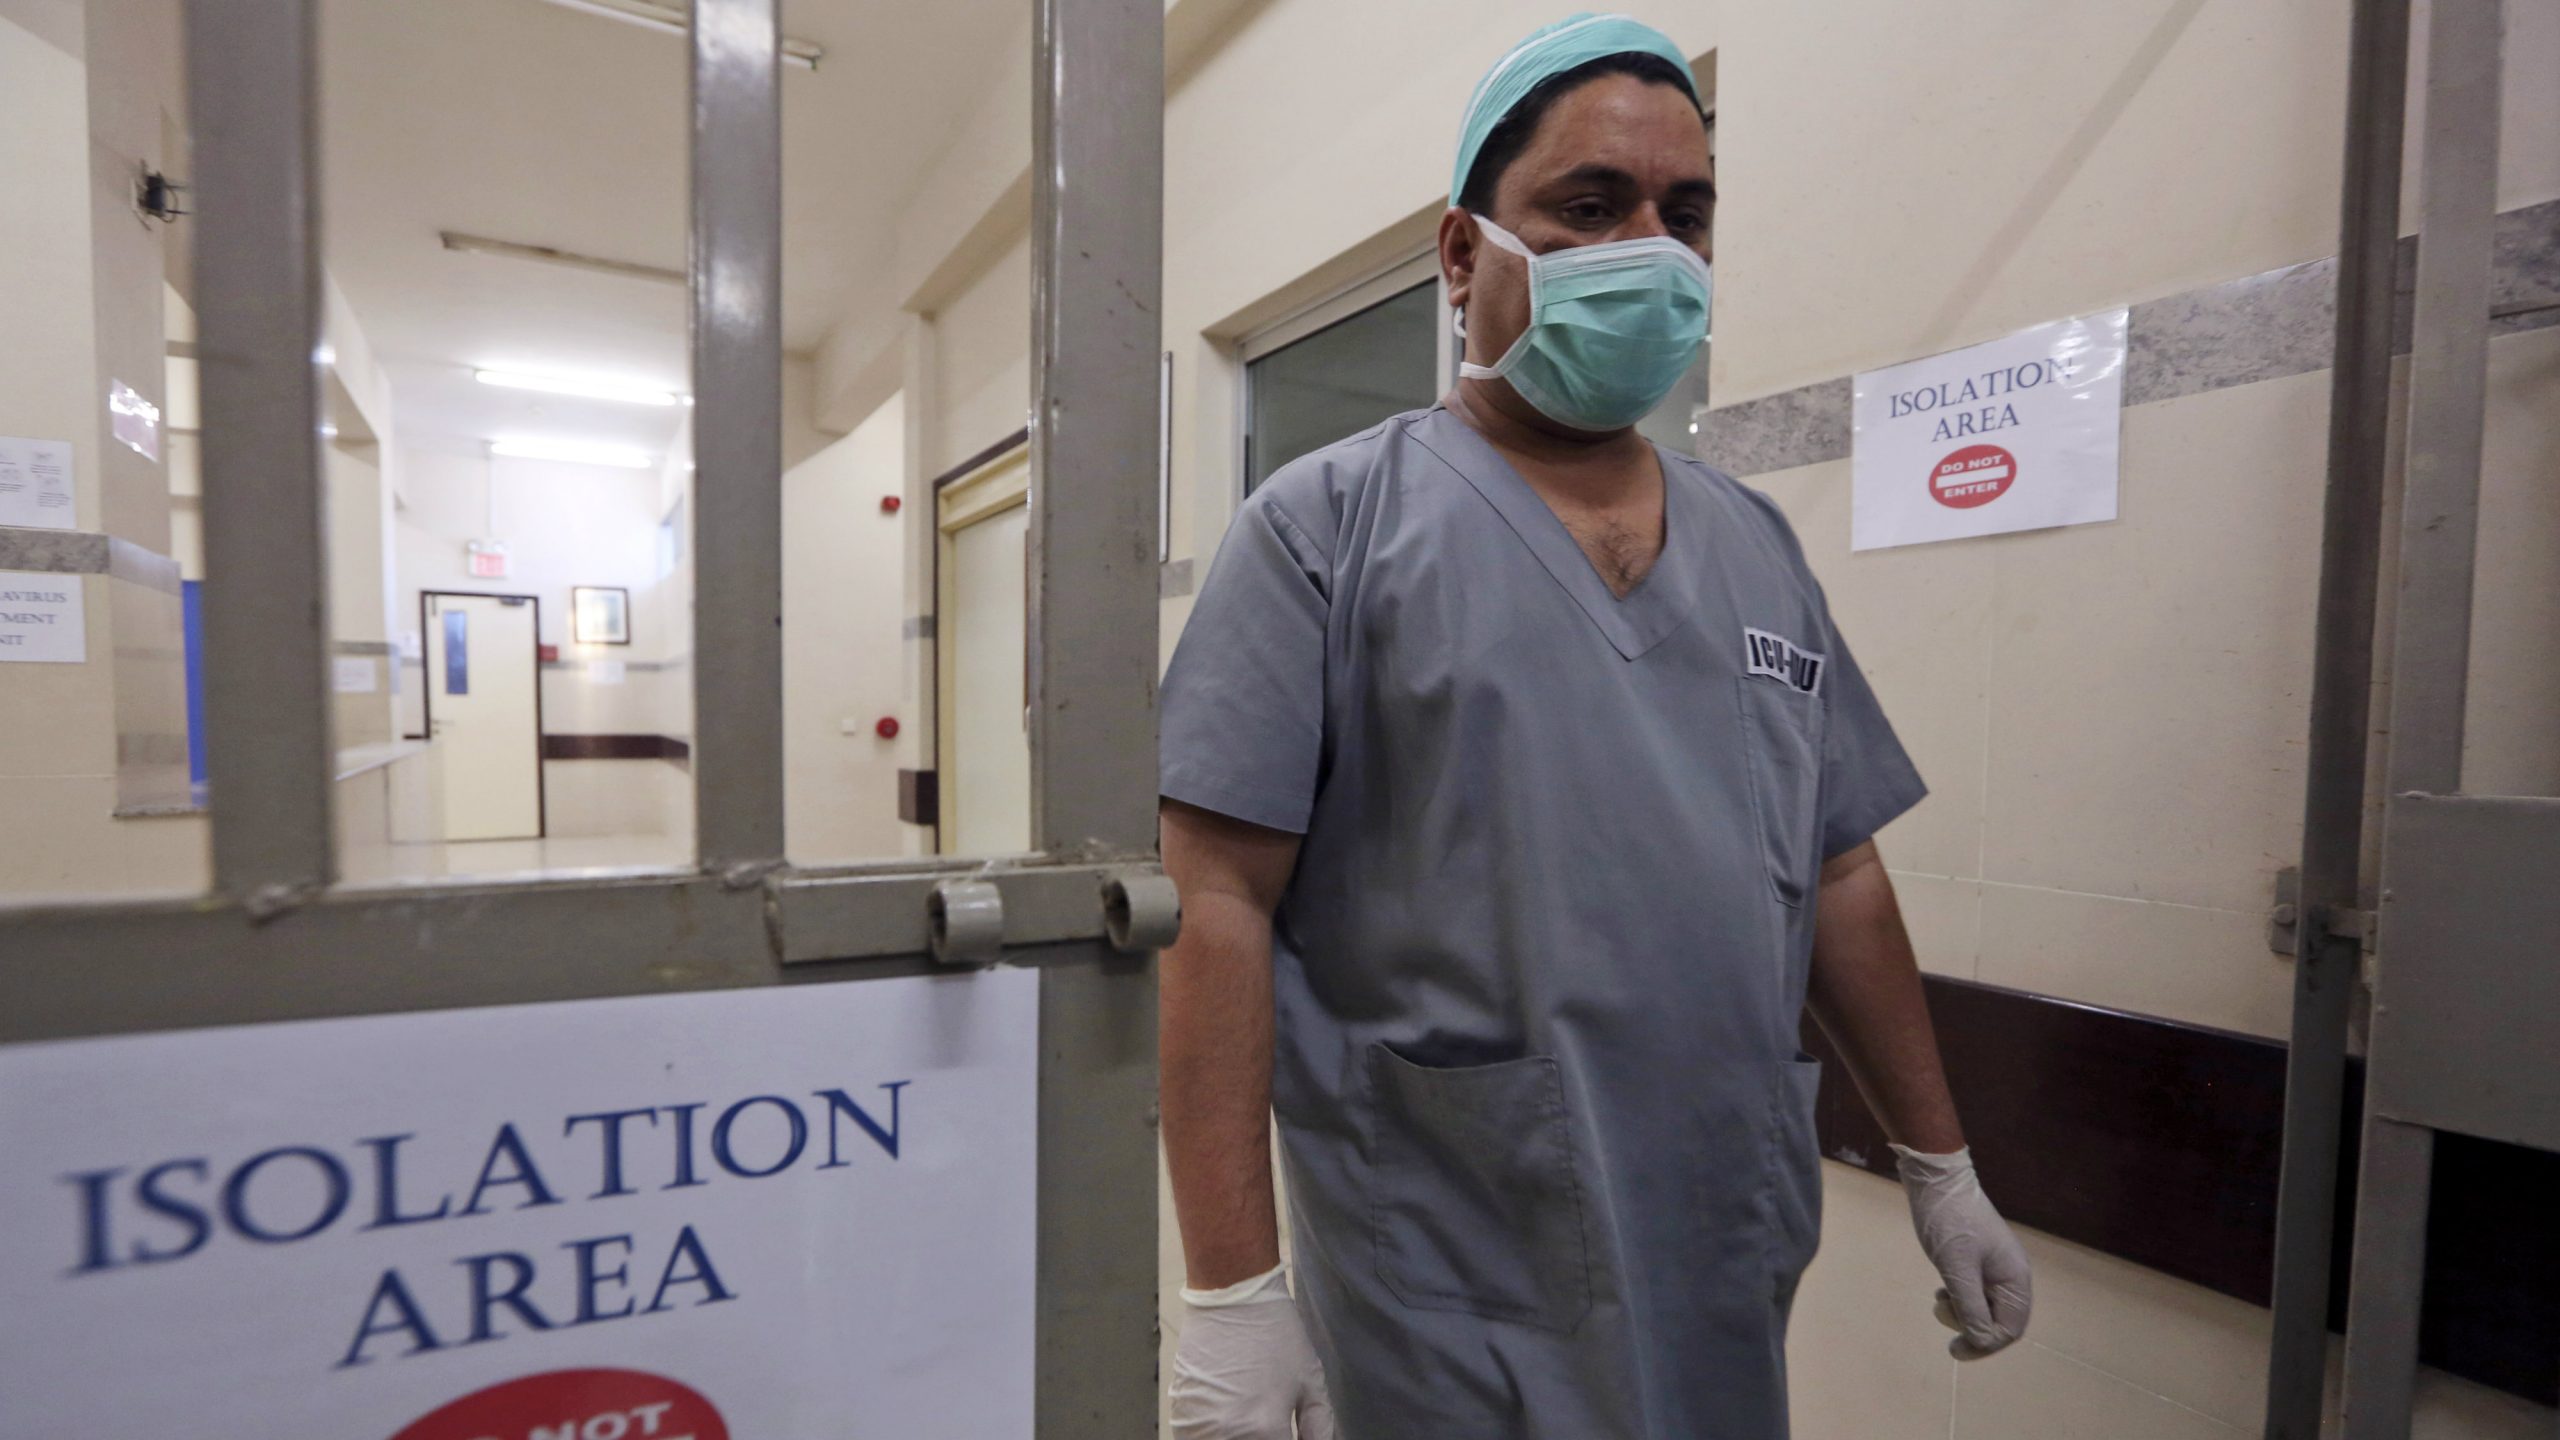 Dvoje zvaničnika razrešeno zbog lošeg upravljanja zdravstvom tokom epidemije u Kini 1